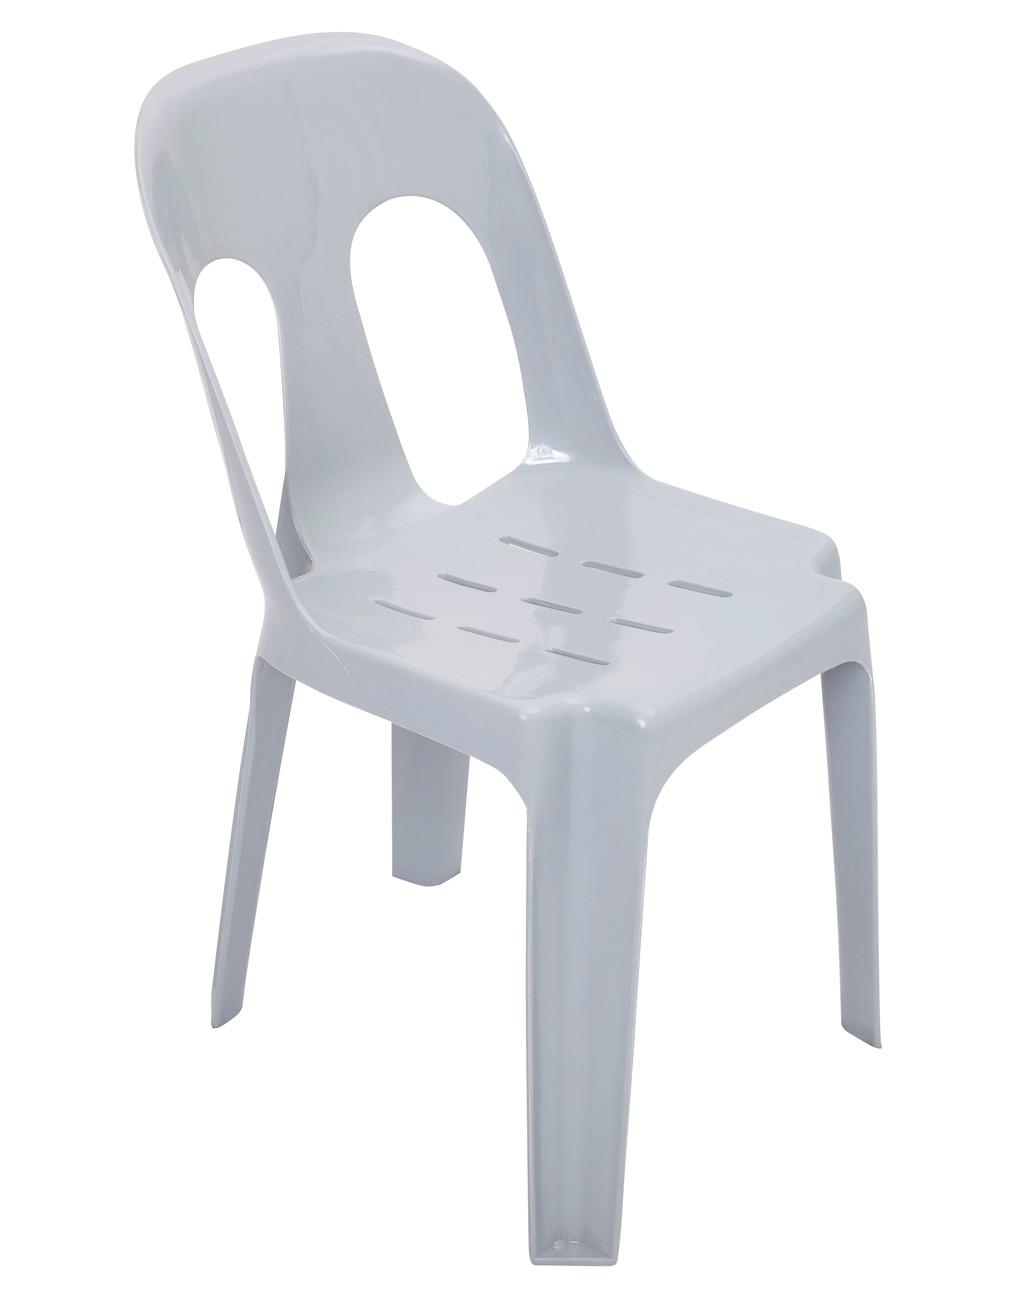 Pippee Chair